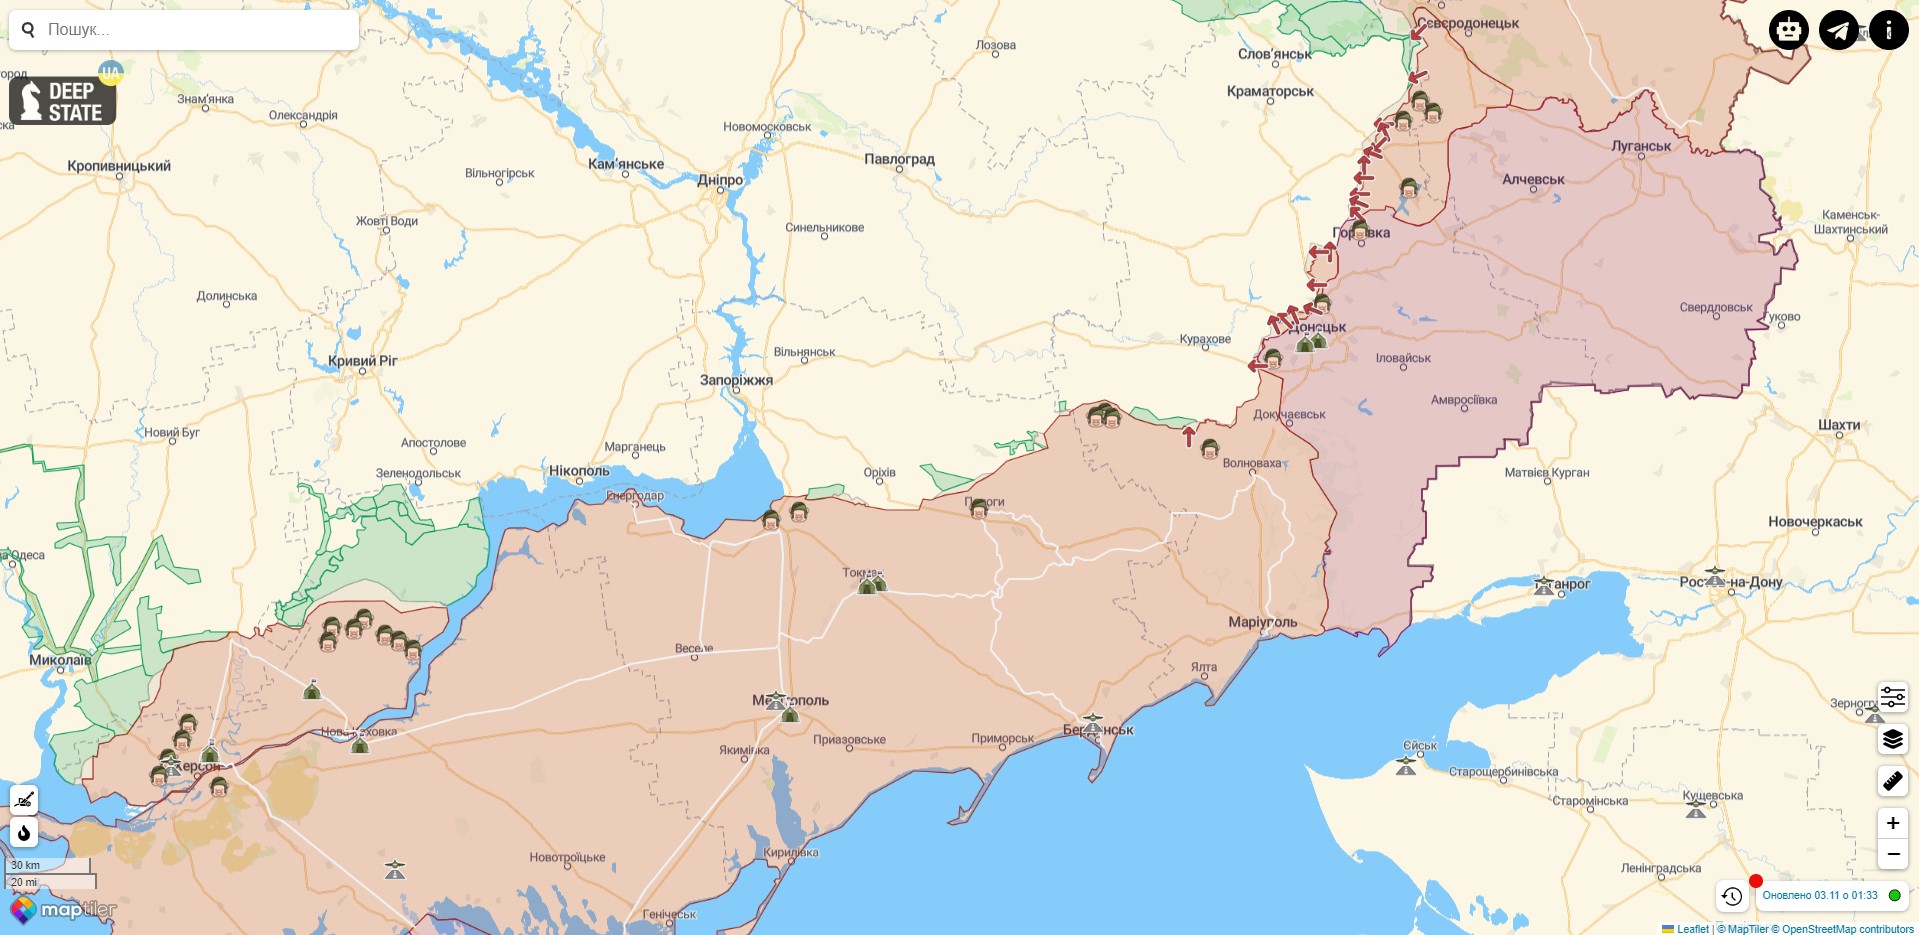 Боевые действия против РФ на территории Украины на 3 ноября